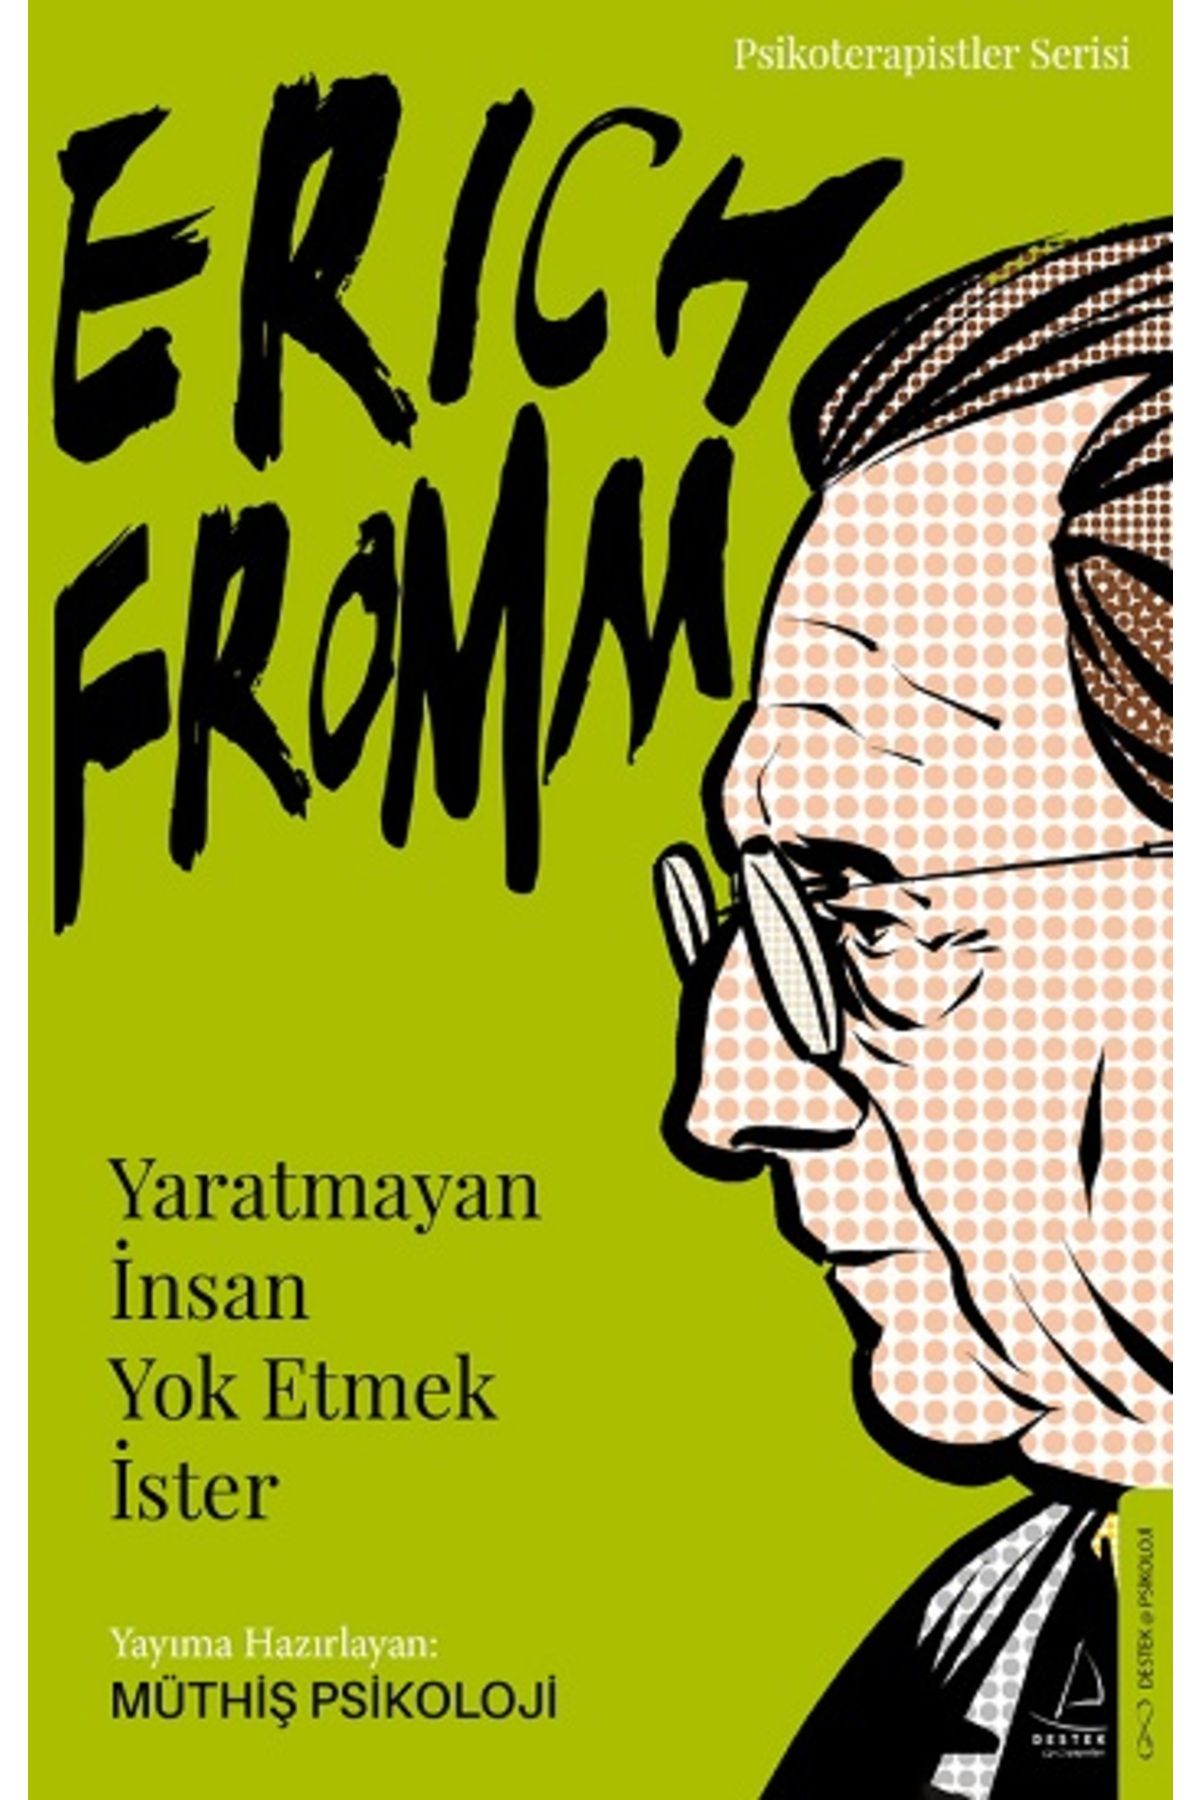 Destek Yayınları Erich Fromm-yaratmayan Insan Yok Etmek Ister